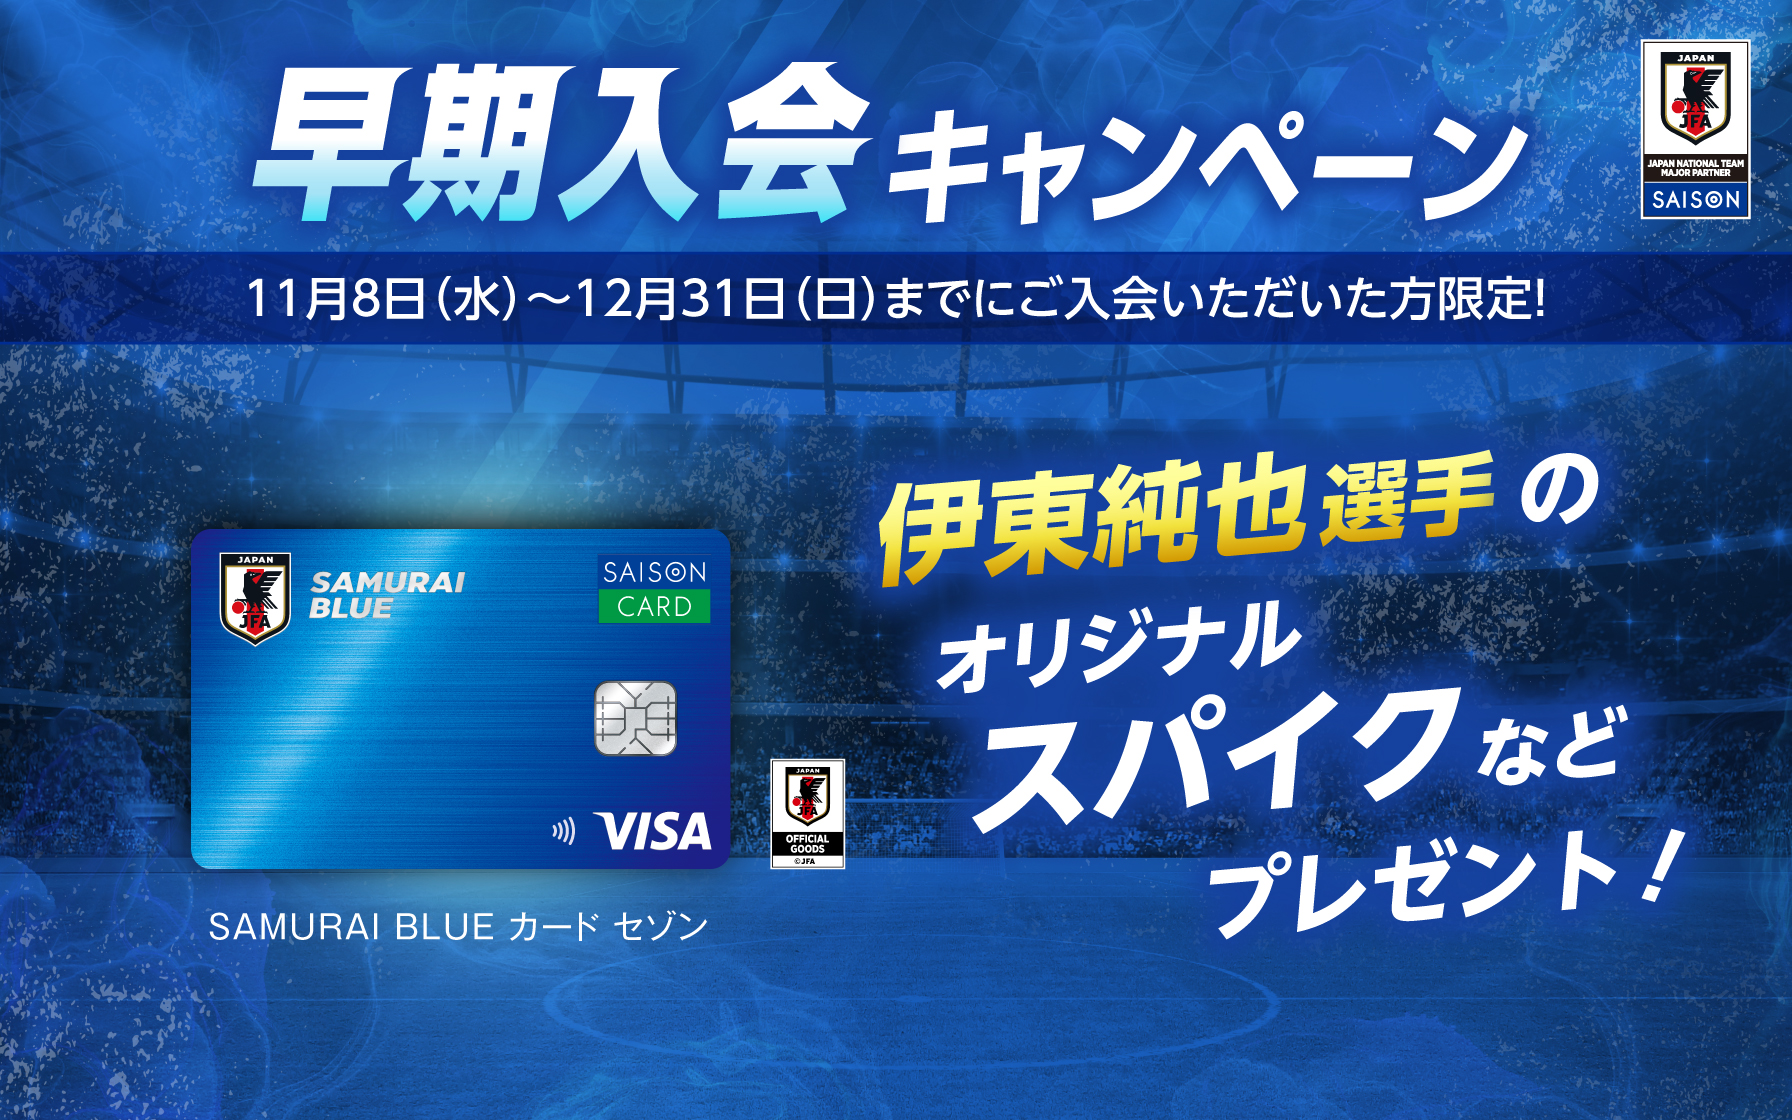 【SAMURAI BLUE カード セゾン会員限定】早期入会キャンペーン！ 12月31日(日)までご入会いただいた方限定で、豪華グッズプレゼント